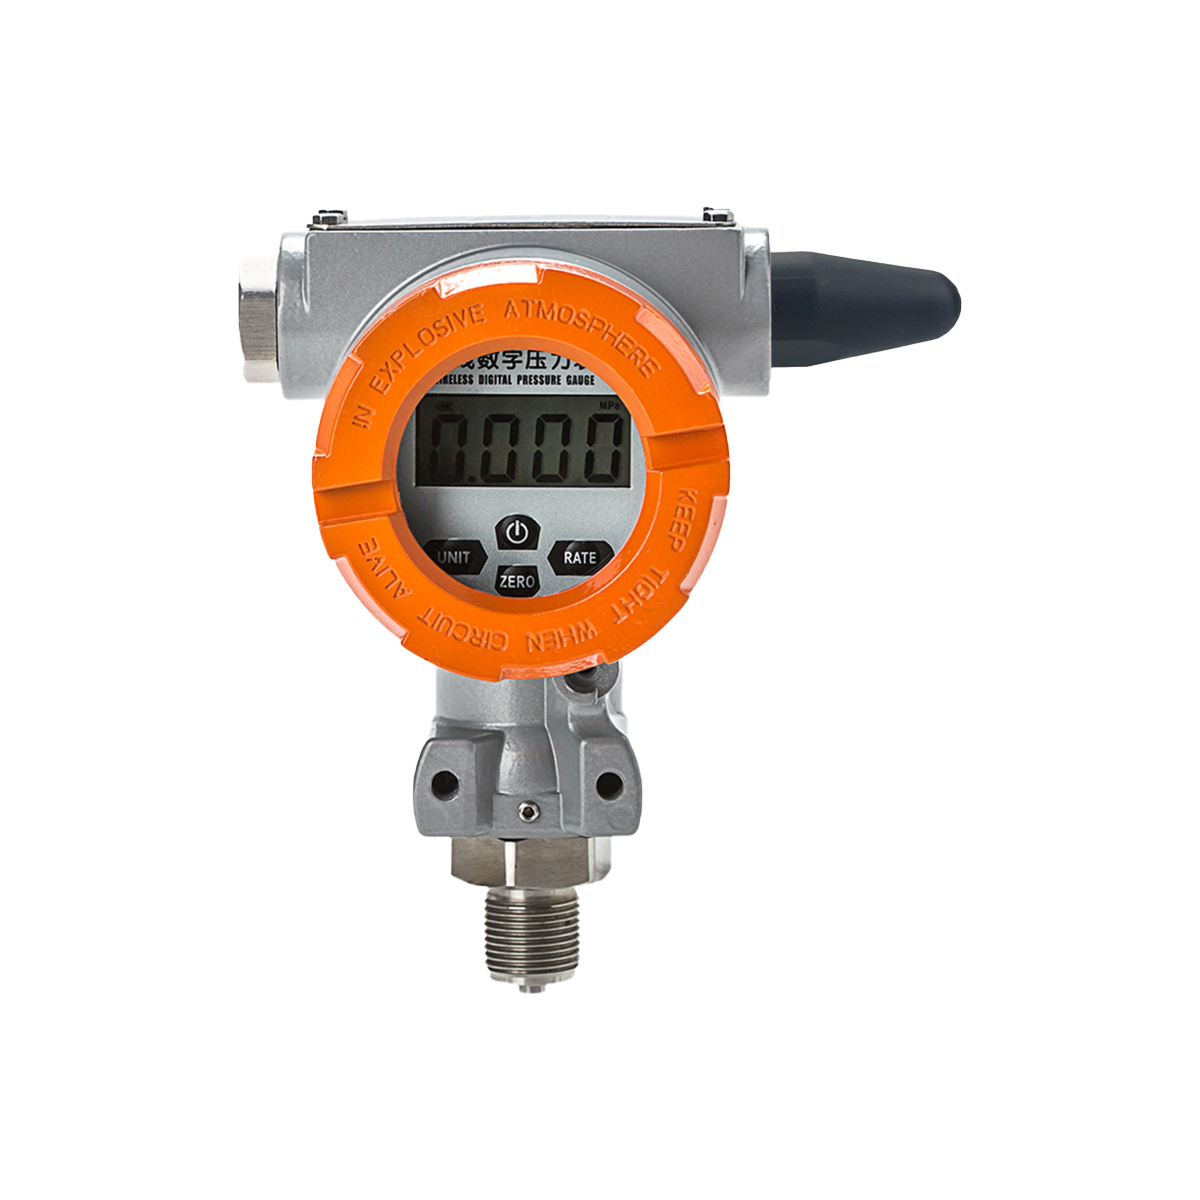 Wireless digital pressure gauge